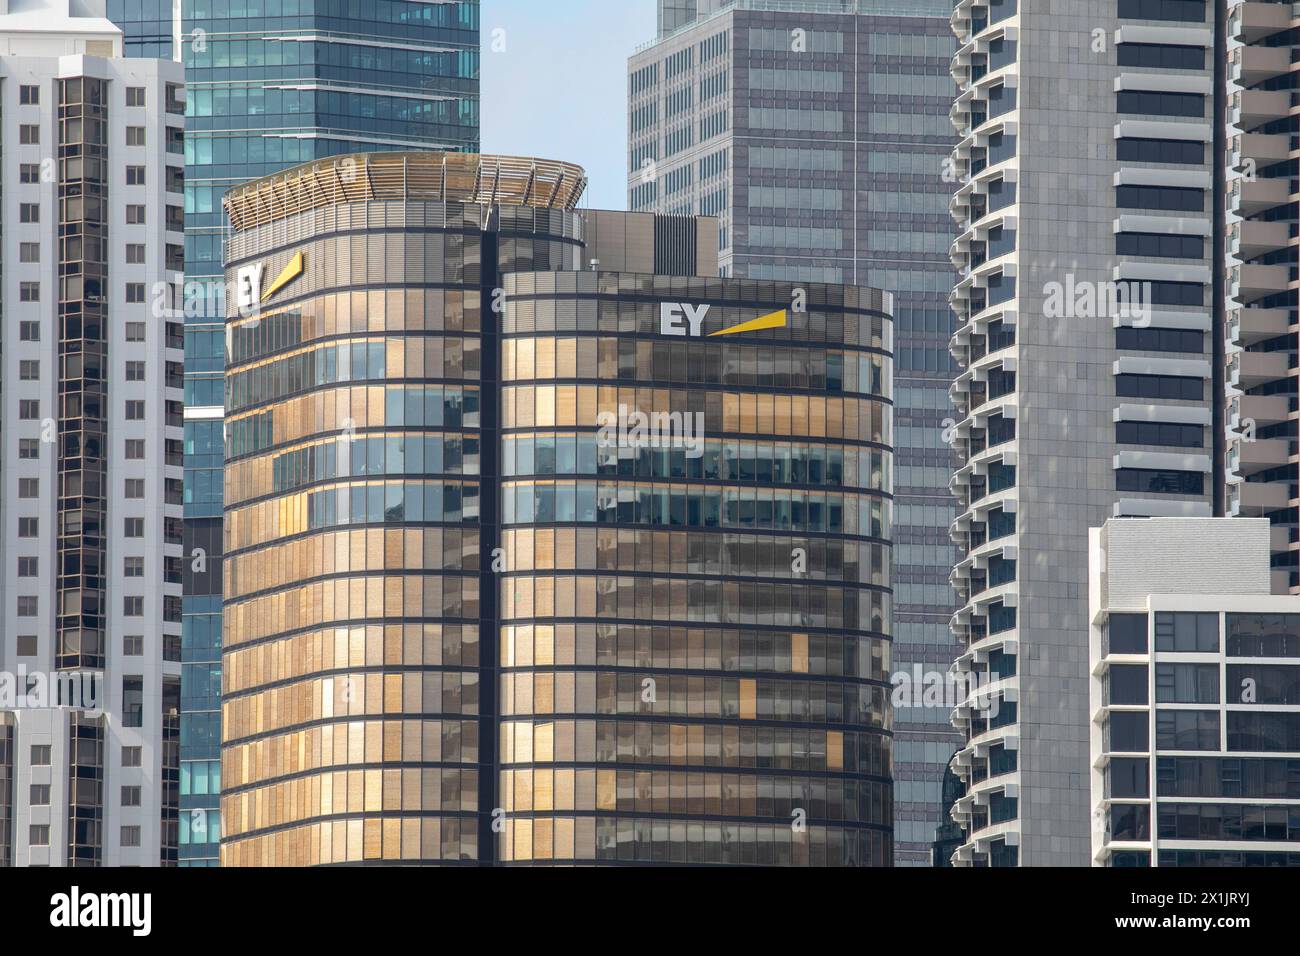 Immeuble de bureaux EY Consultancy 200 George Street Sydney avec la marque EY et le logo commercial sur la façade, Sydney Australie Banque D'Images